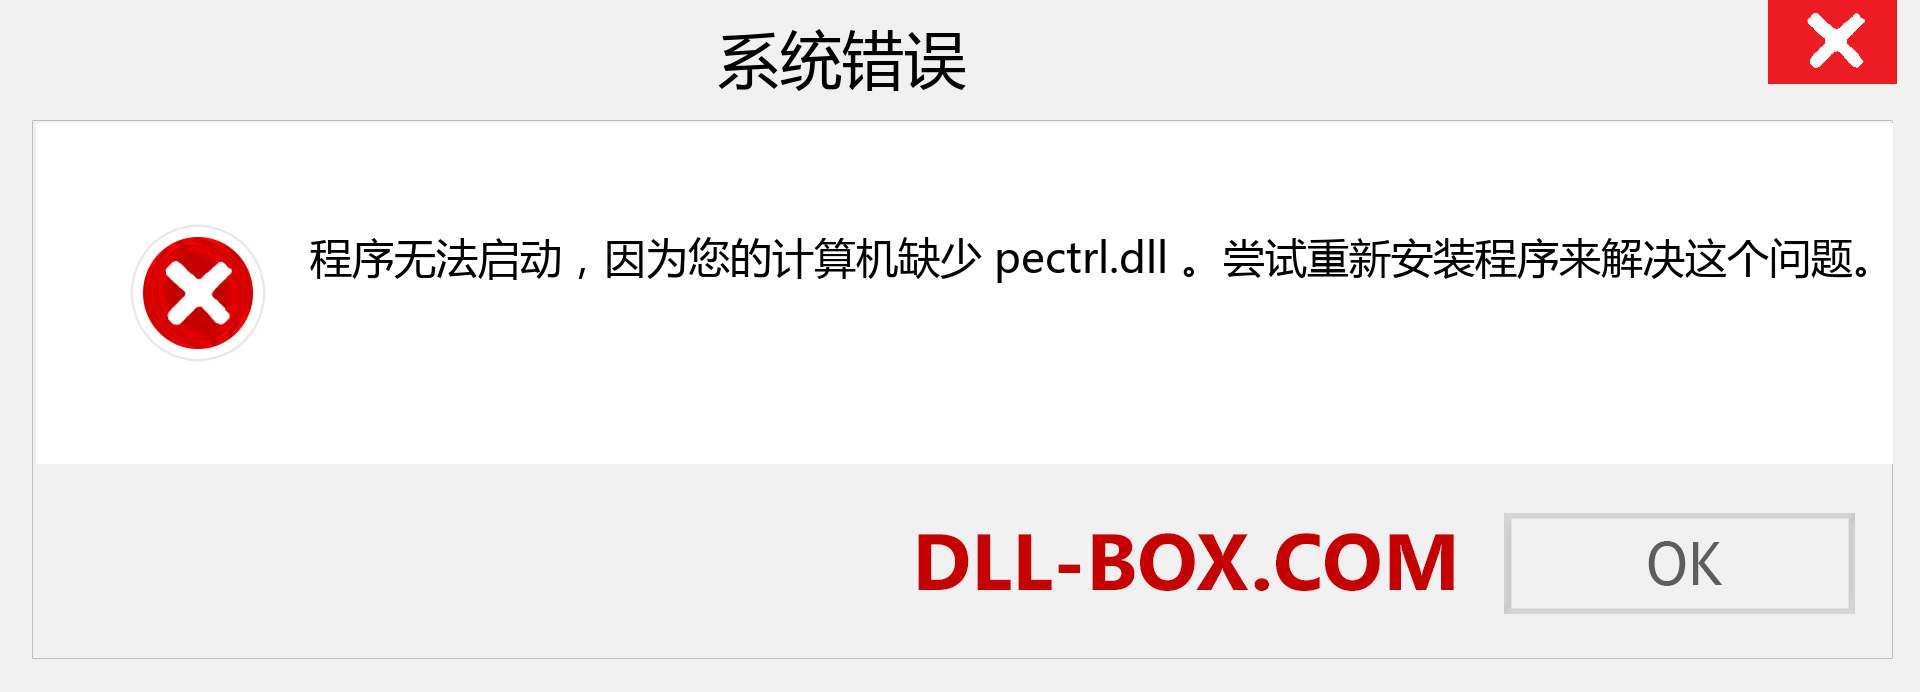 pectrl.dll 文件丢失？。 适用于 Windows 7、8、10 的下载 - 修复 Windows、照片、图像上的 pectrl dll 丢失错误